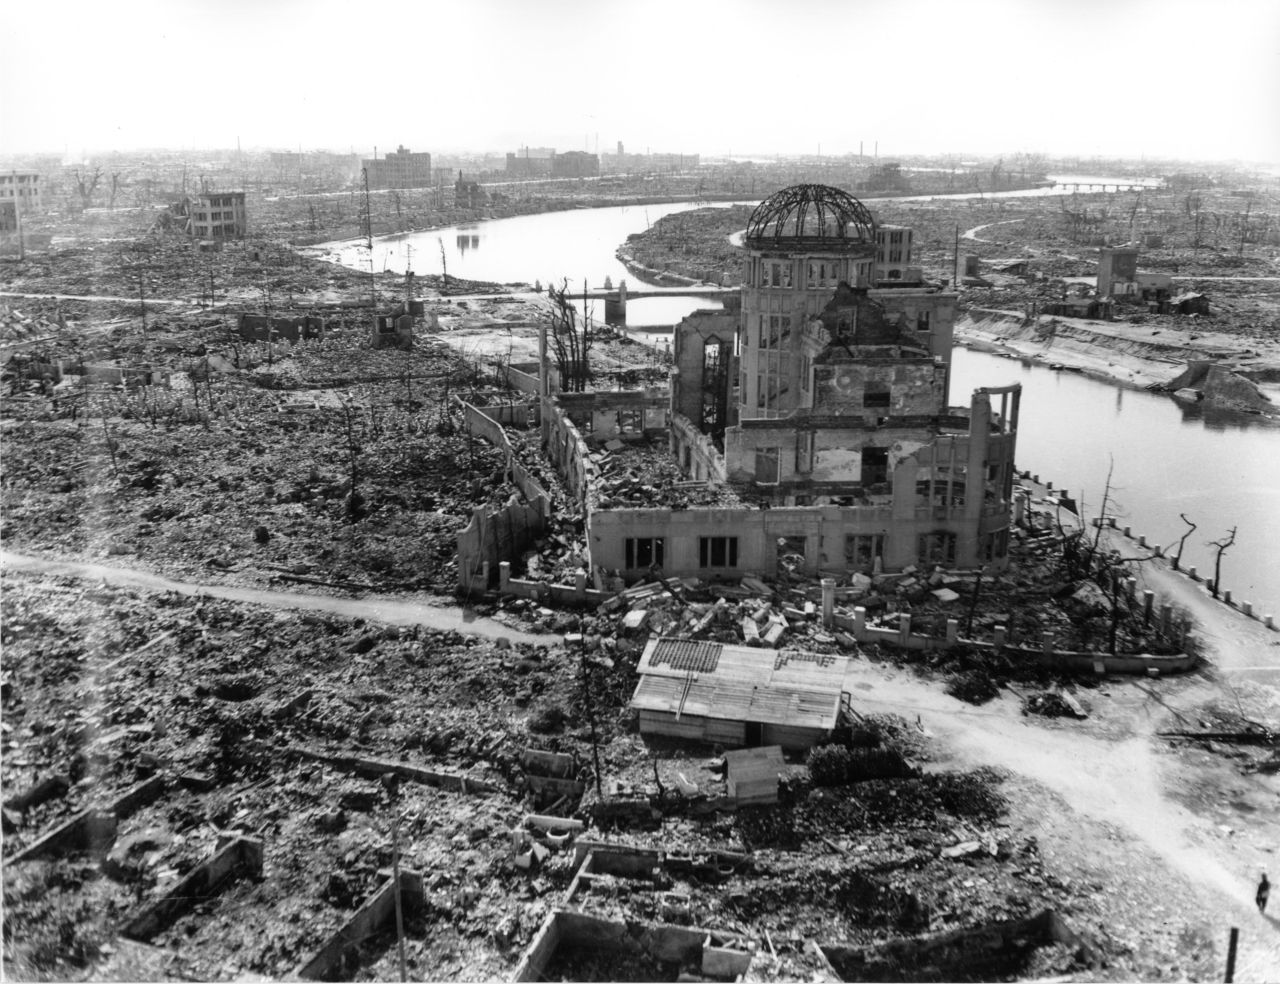 Les ruines du Hall de promotion industrielle de Hiroshima, qui deviendra un symbole de la tragédie sous le nom de « Dôme de la bombe atomique ». Photo prise par l’armée américaine en novembre 1945 (photo avec l’aimable autorisation du Musée du mémorial pour la paix)